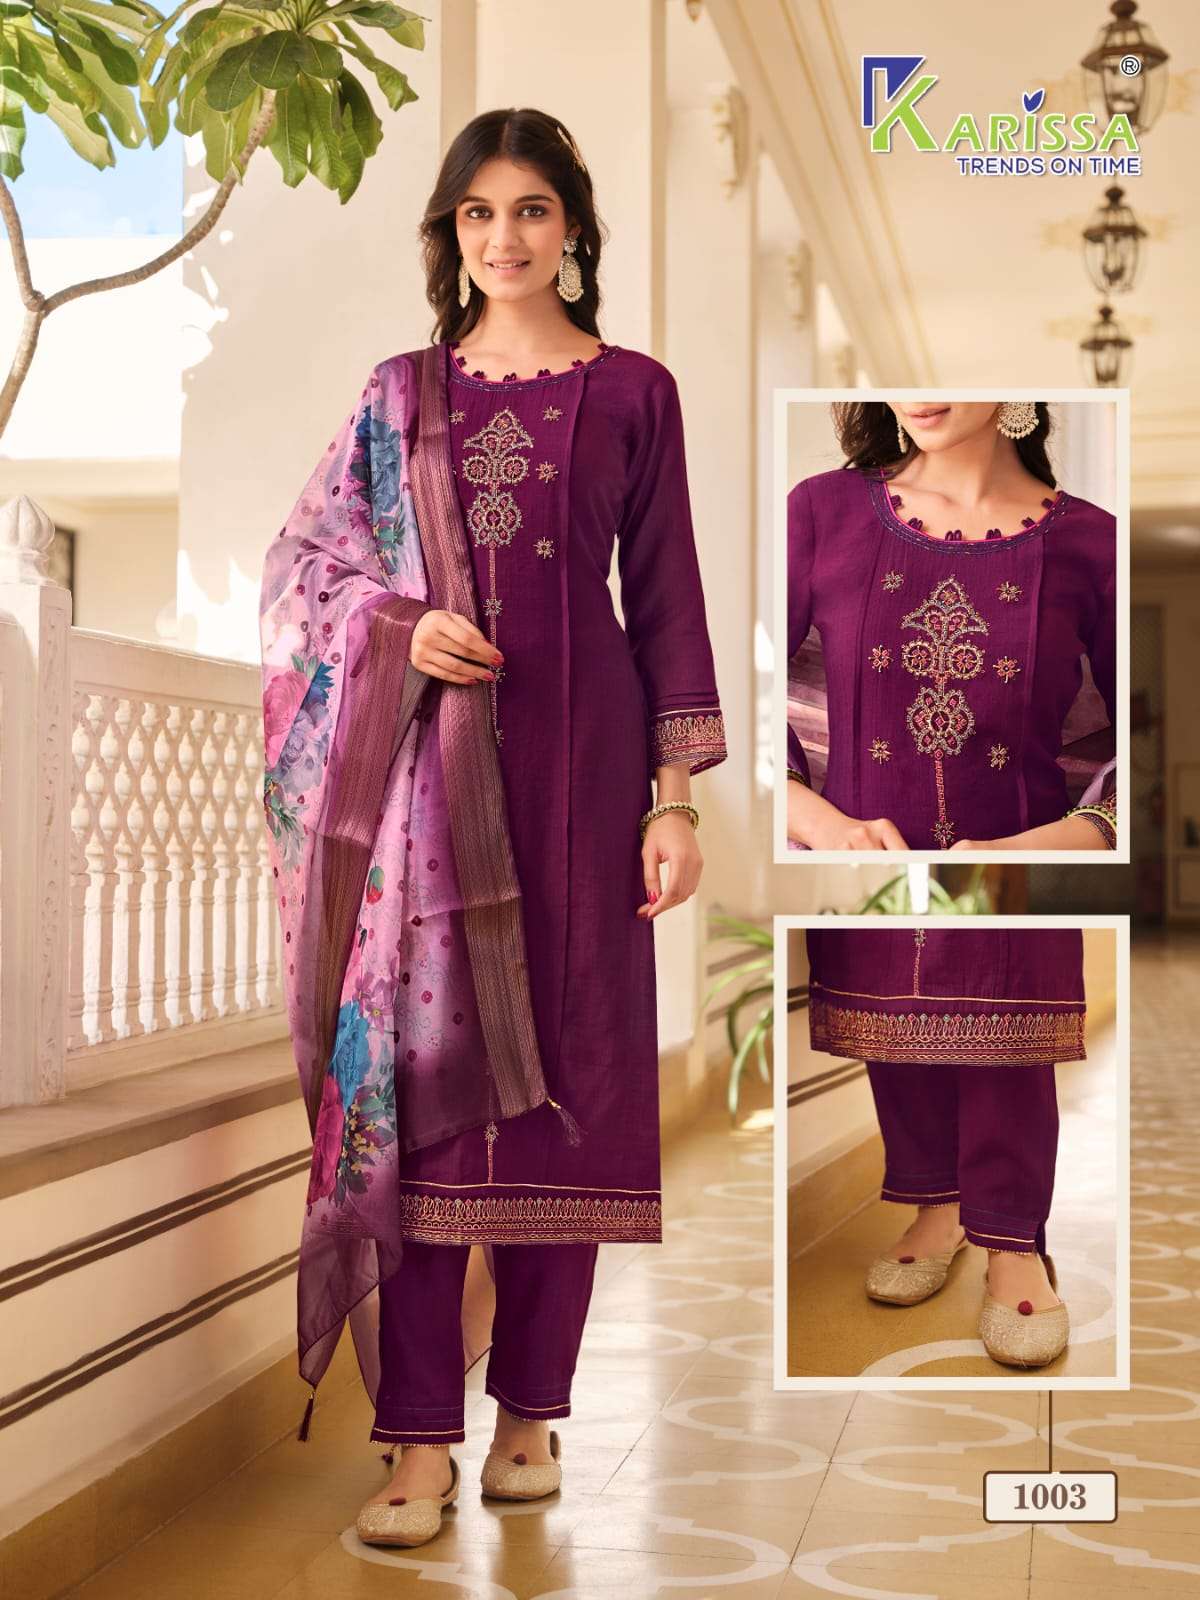 karissa trends bandhej 1001-1004 series designer party wear kurti set wholesaler surat gujarat